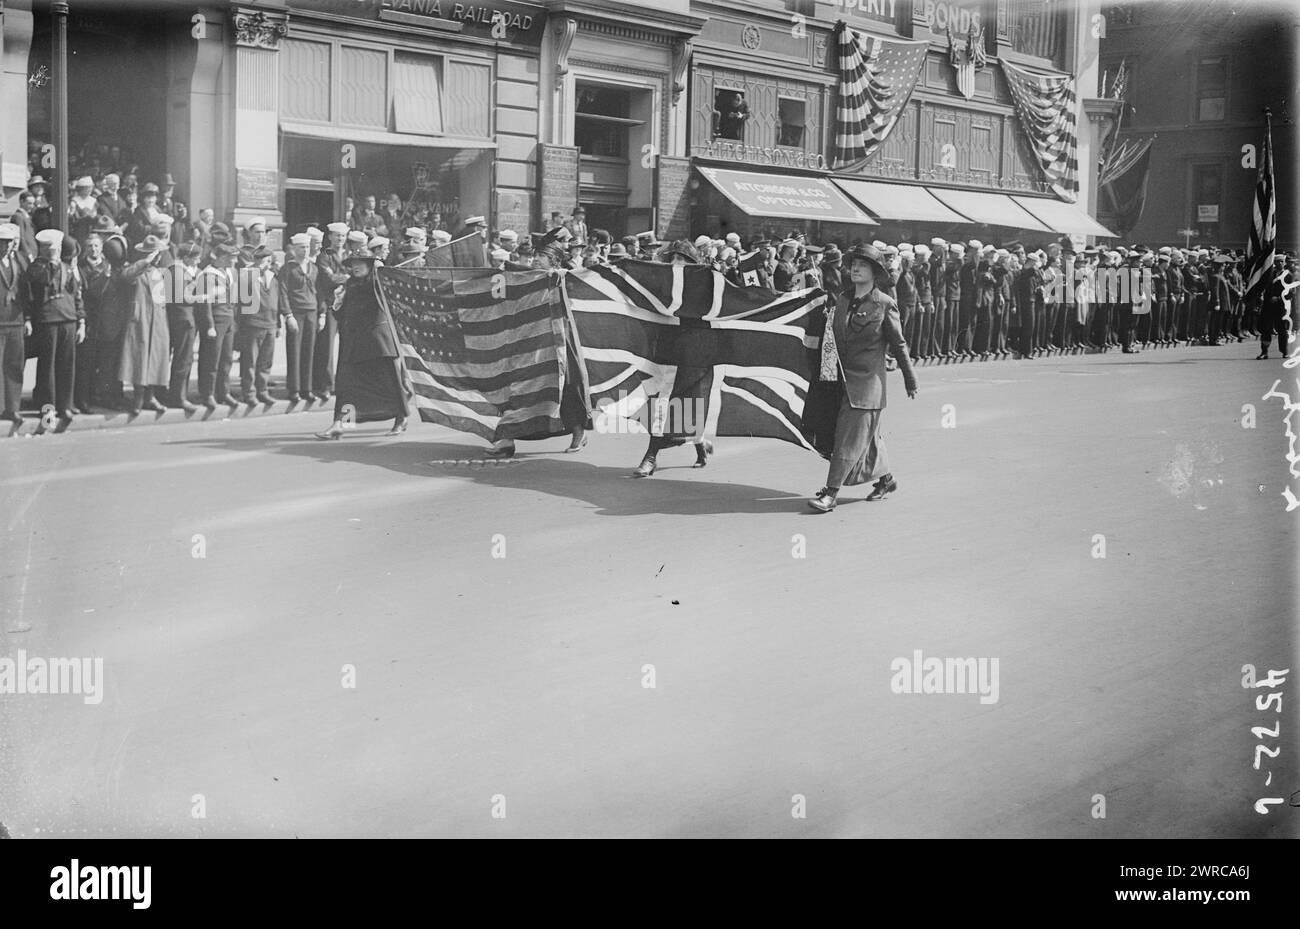 Liberty Parade, photographie montre des femmes avec des drapeaux américains et britanniques marchant dans une parade pour soutenir Liberty Bonds pendant la première Guerre mondiale, New York City., 1917 ou 1918, Guerre mondiale, 1914-1918, négatifs en verre, 1 négatif : verre Banque D'Images